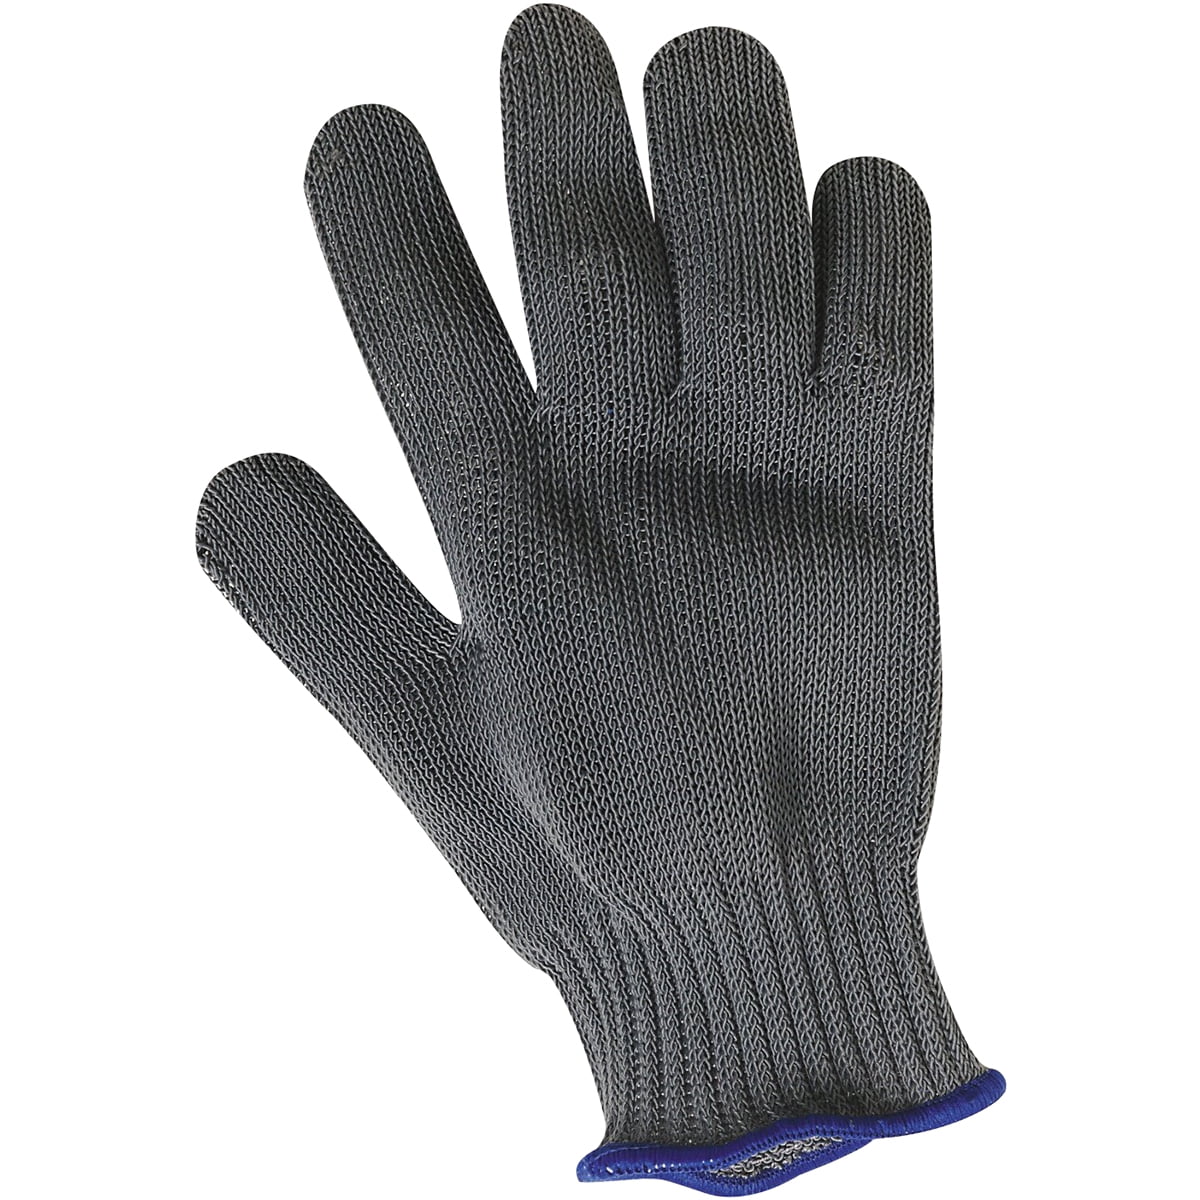 Rapala Fillet Glove - Gray - Medium 